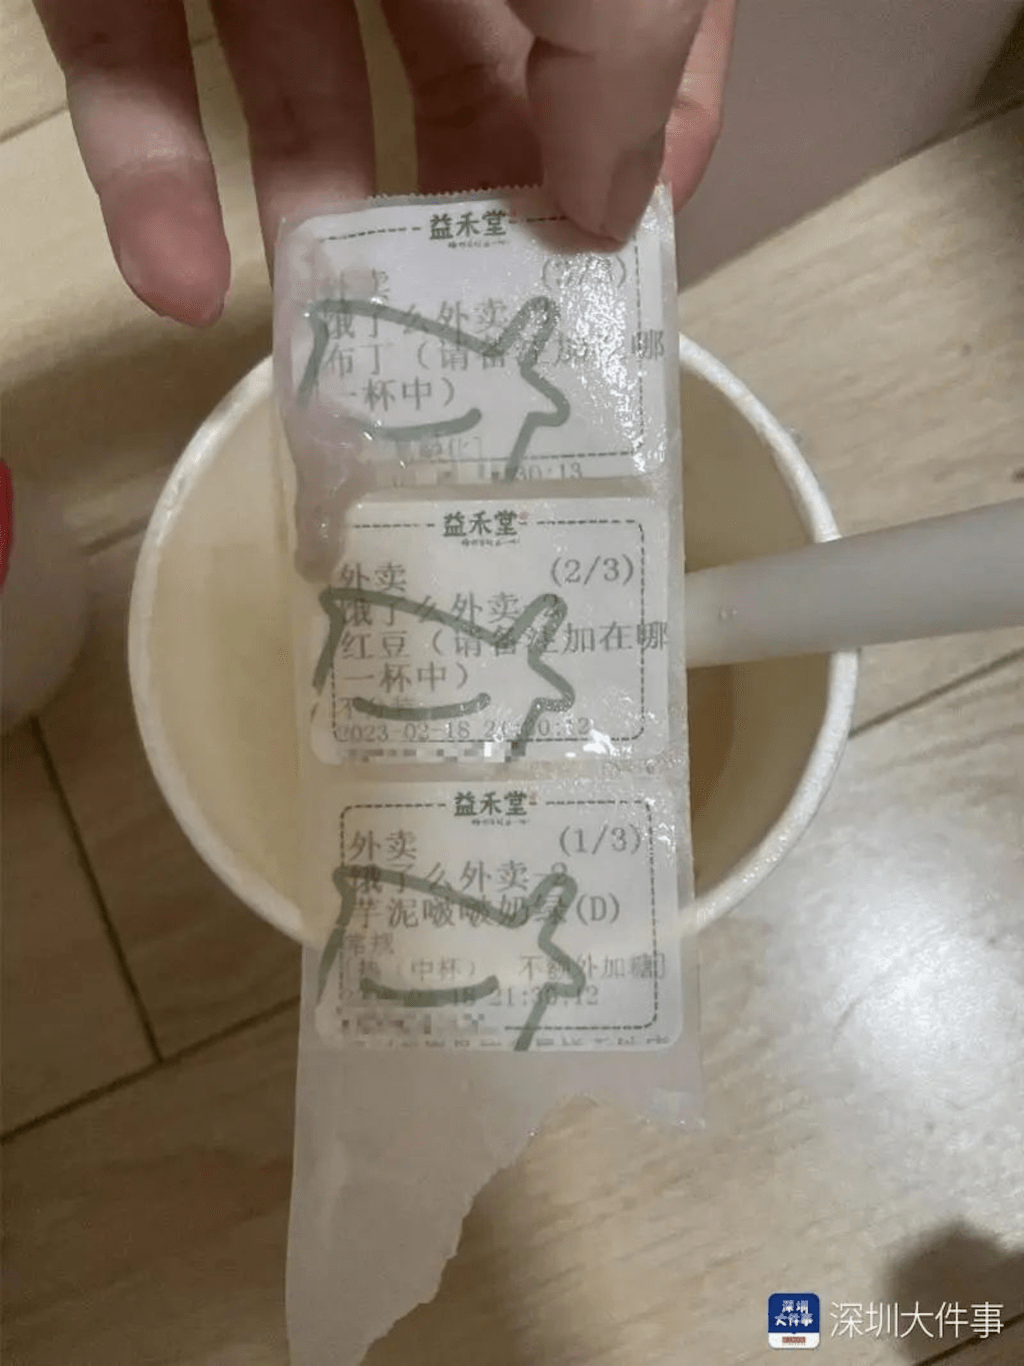 女网民发布奶茶喝出3张标签的照片。